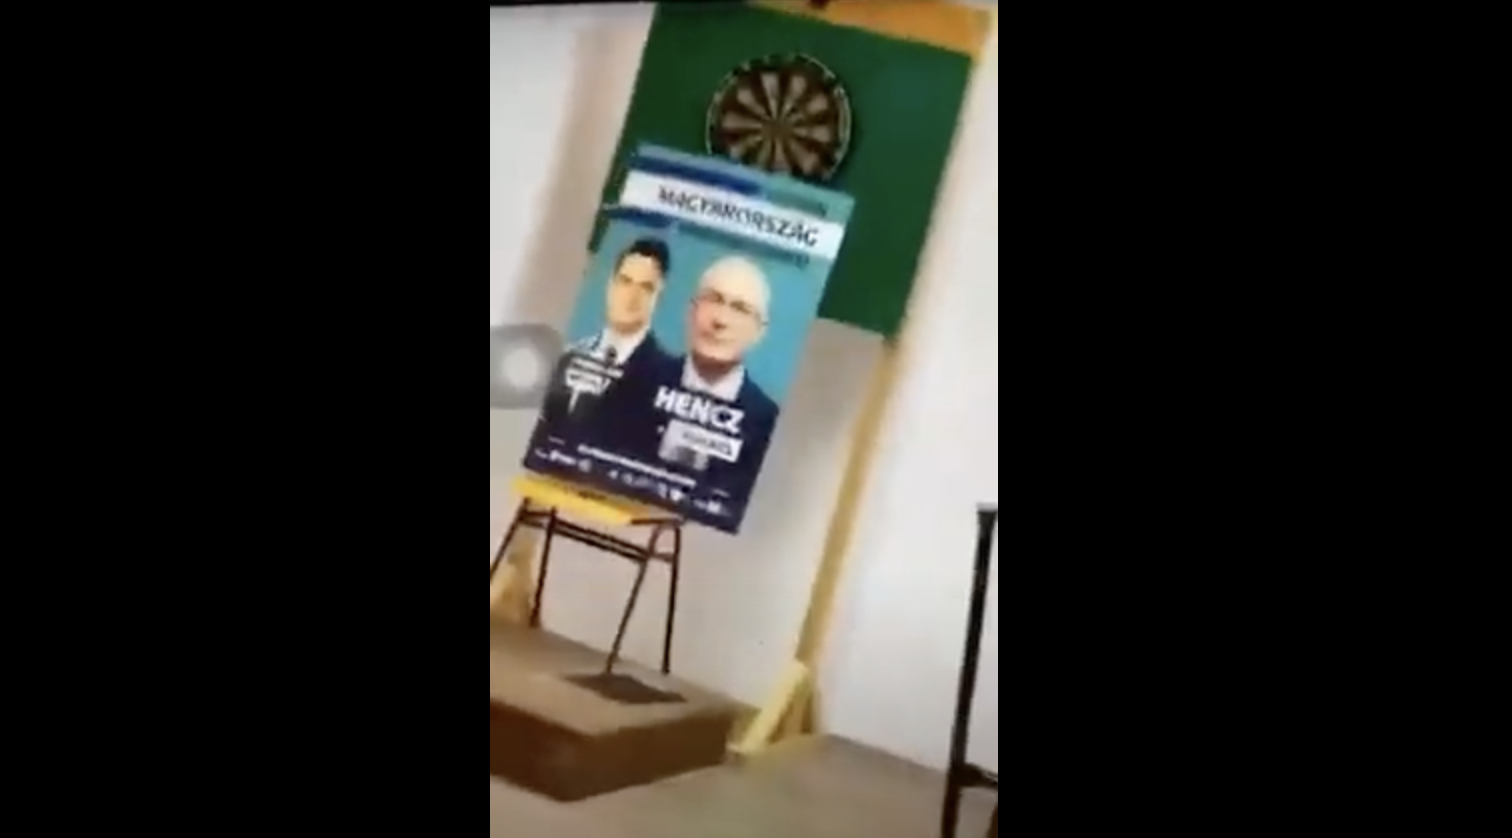 „Faszszopó Hencz Kornél” - dartsszal dobálták az ellenzéki jelölt plakátját a celldömölki gimnáziumban